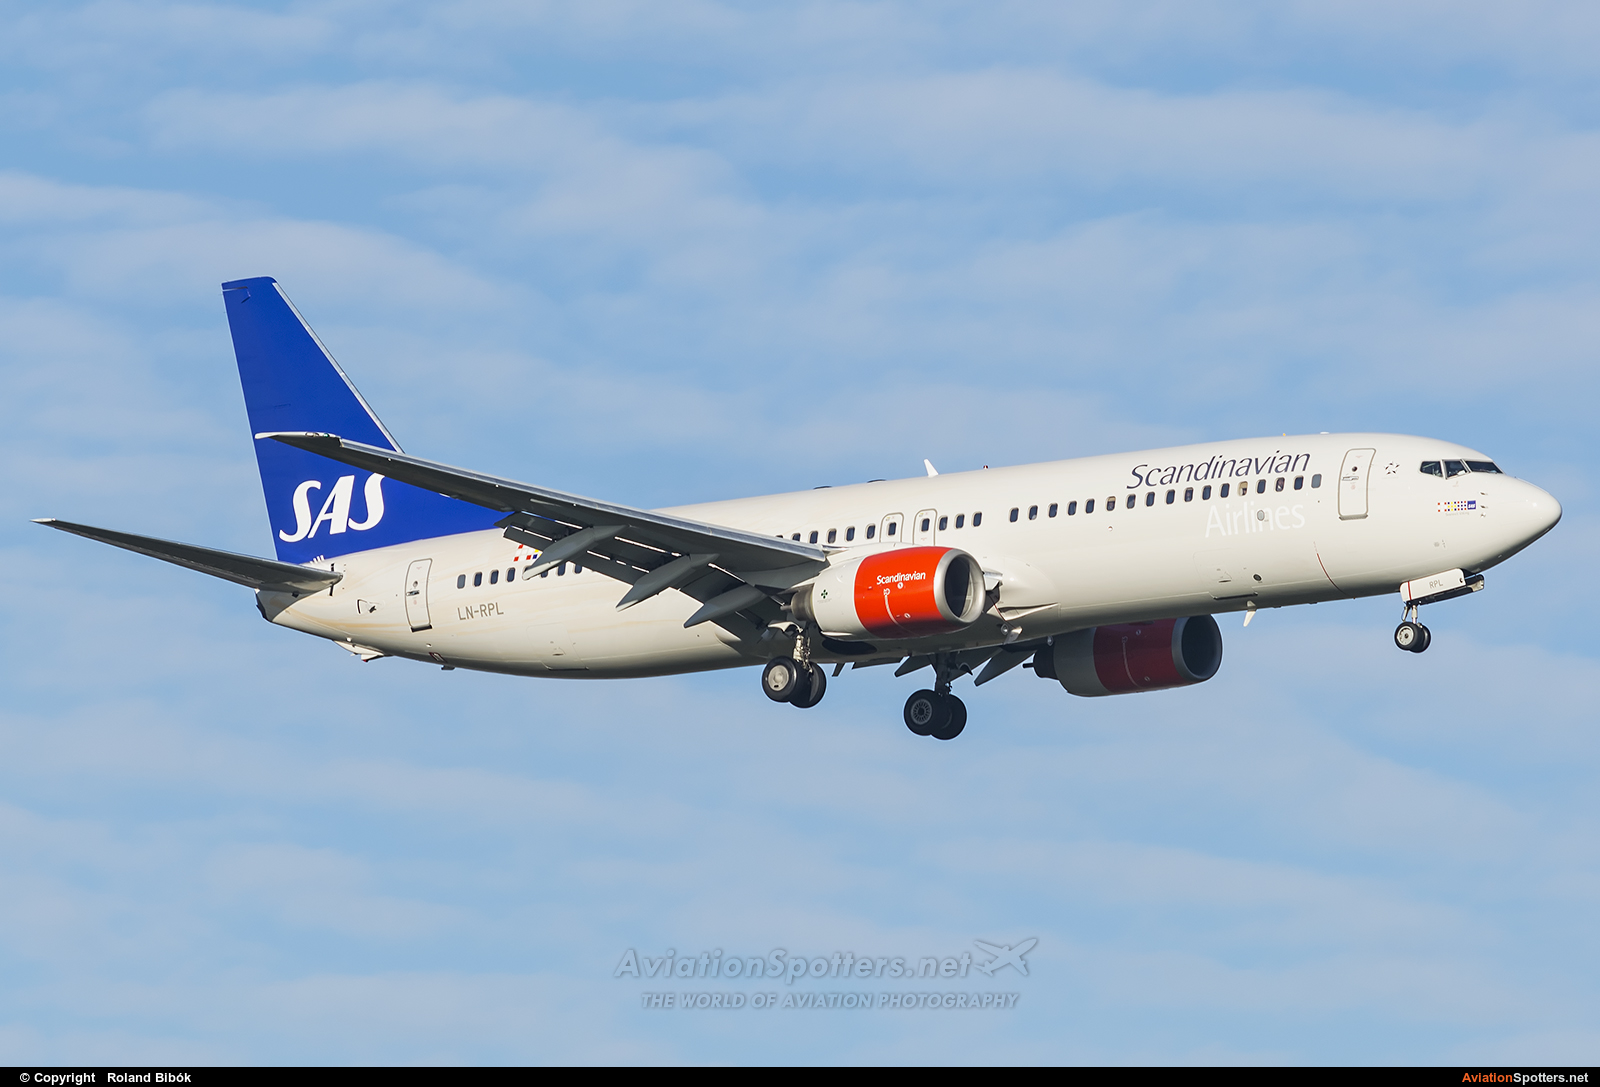 SAS - Scandinavian Airlines  -  737-800  (LN-RPL) By Roland Bibók (Roland Bibok)